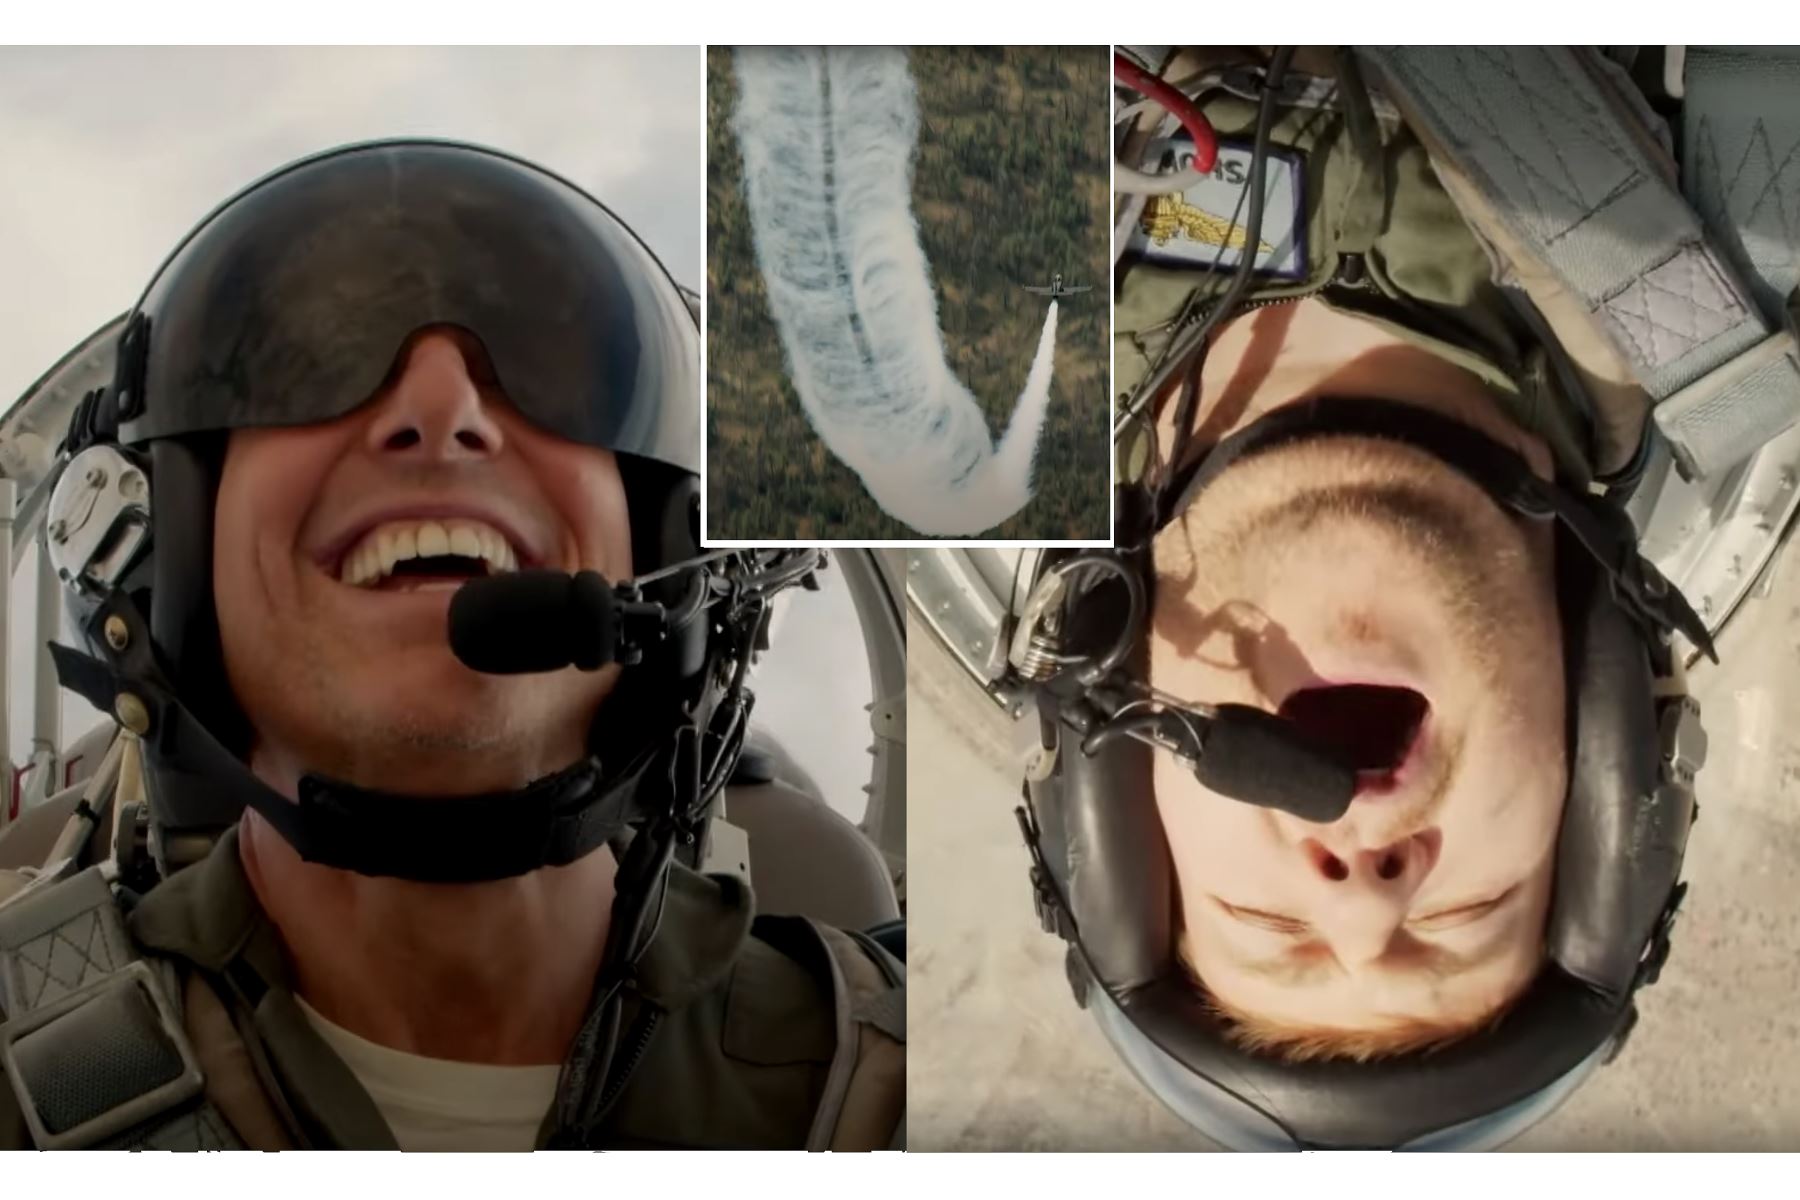 El taquillero actor Tom Cruise llevó al extremo al famoso conductor británico James Corden al pilotar un jet de combate como parte de la promoción de su nueva película Top Gun: Maverick. Foto: Composición con capturas de pantalla